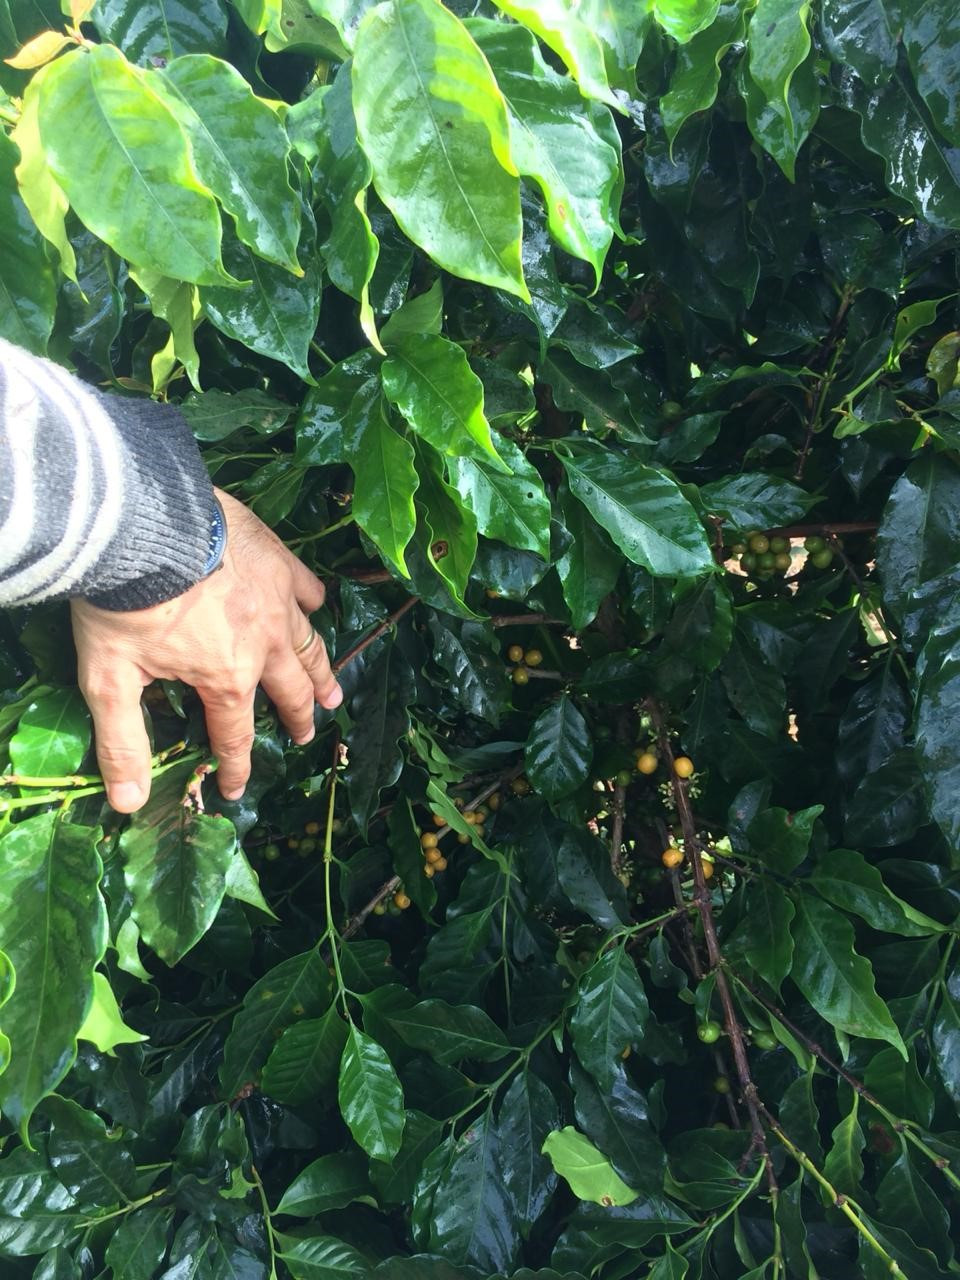 Foto 12: Planta de café da cultivar Catucaí 2SL depois de passar a colhedora de café regulada no dia 05 de junho de 2020, observa-se que a maior parte dos frutos maduros foi derriçada dentro da planta. Fonte: Própria (2020).